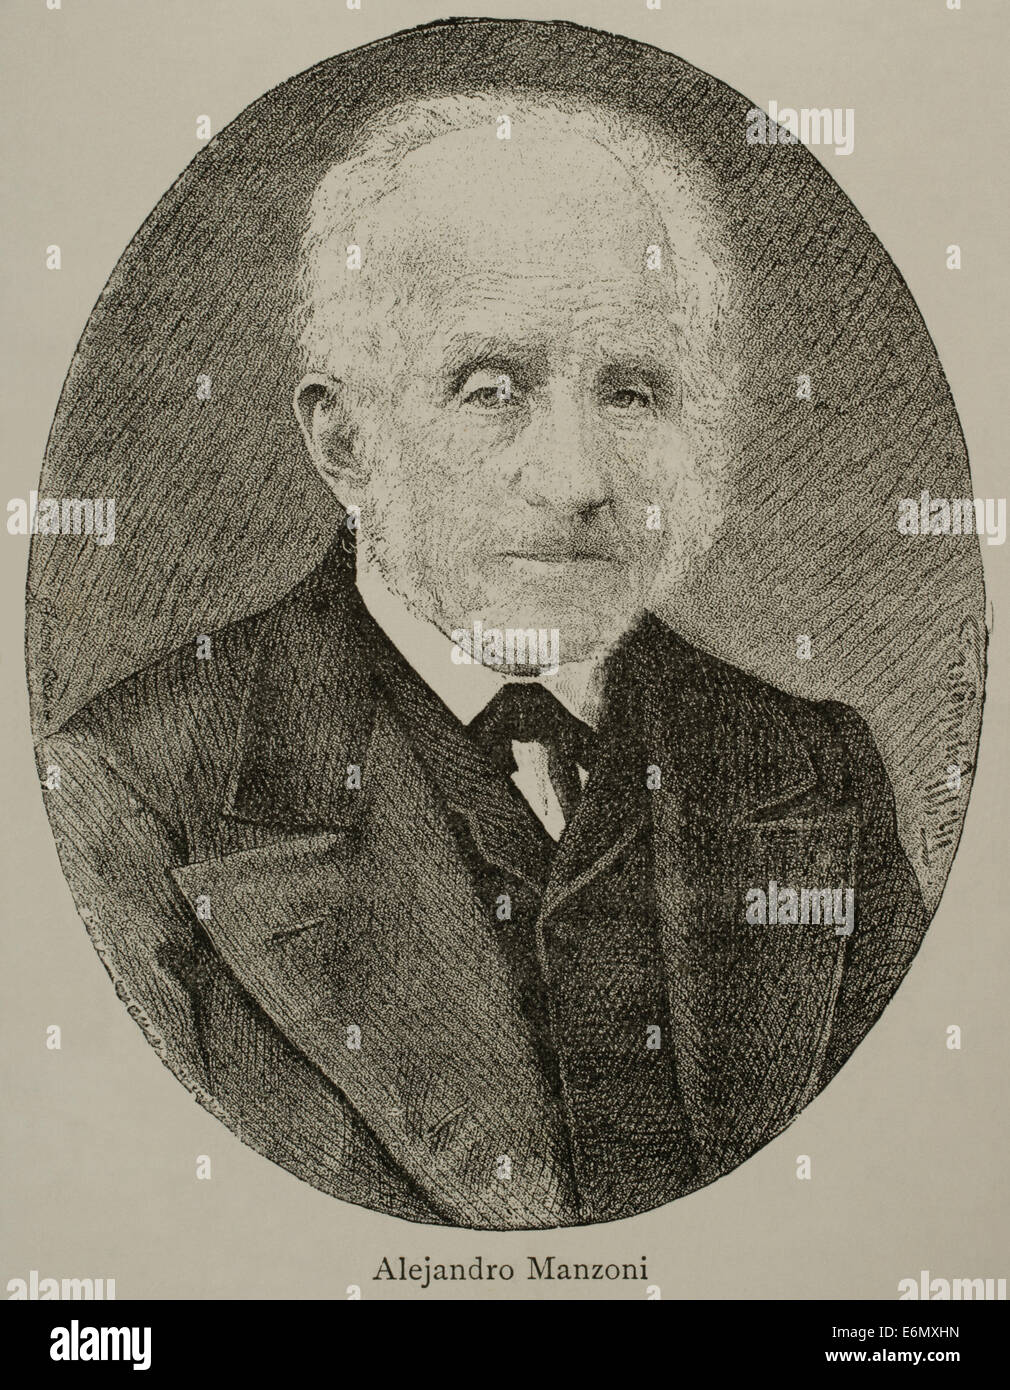 Alessandro Manzoni (1785 – 1873). Italienischer Dichter und Schriftsteller. Kupferstich von Maynhofer. Nuestro Siglo, 1883. Stockfoto